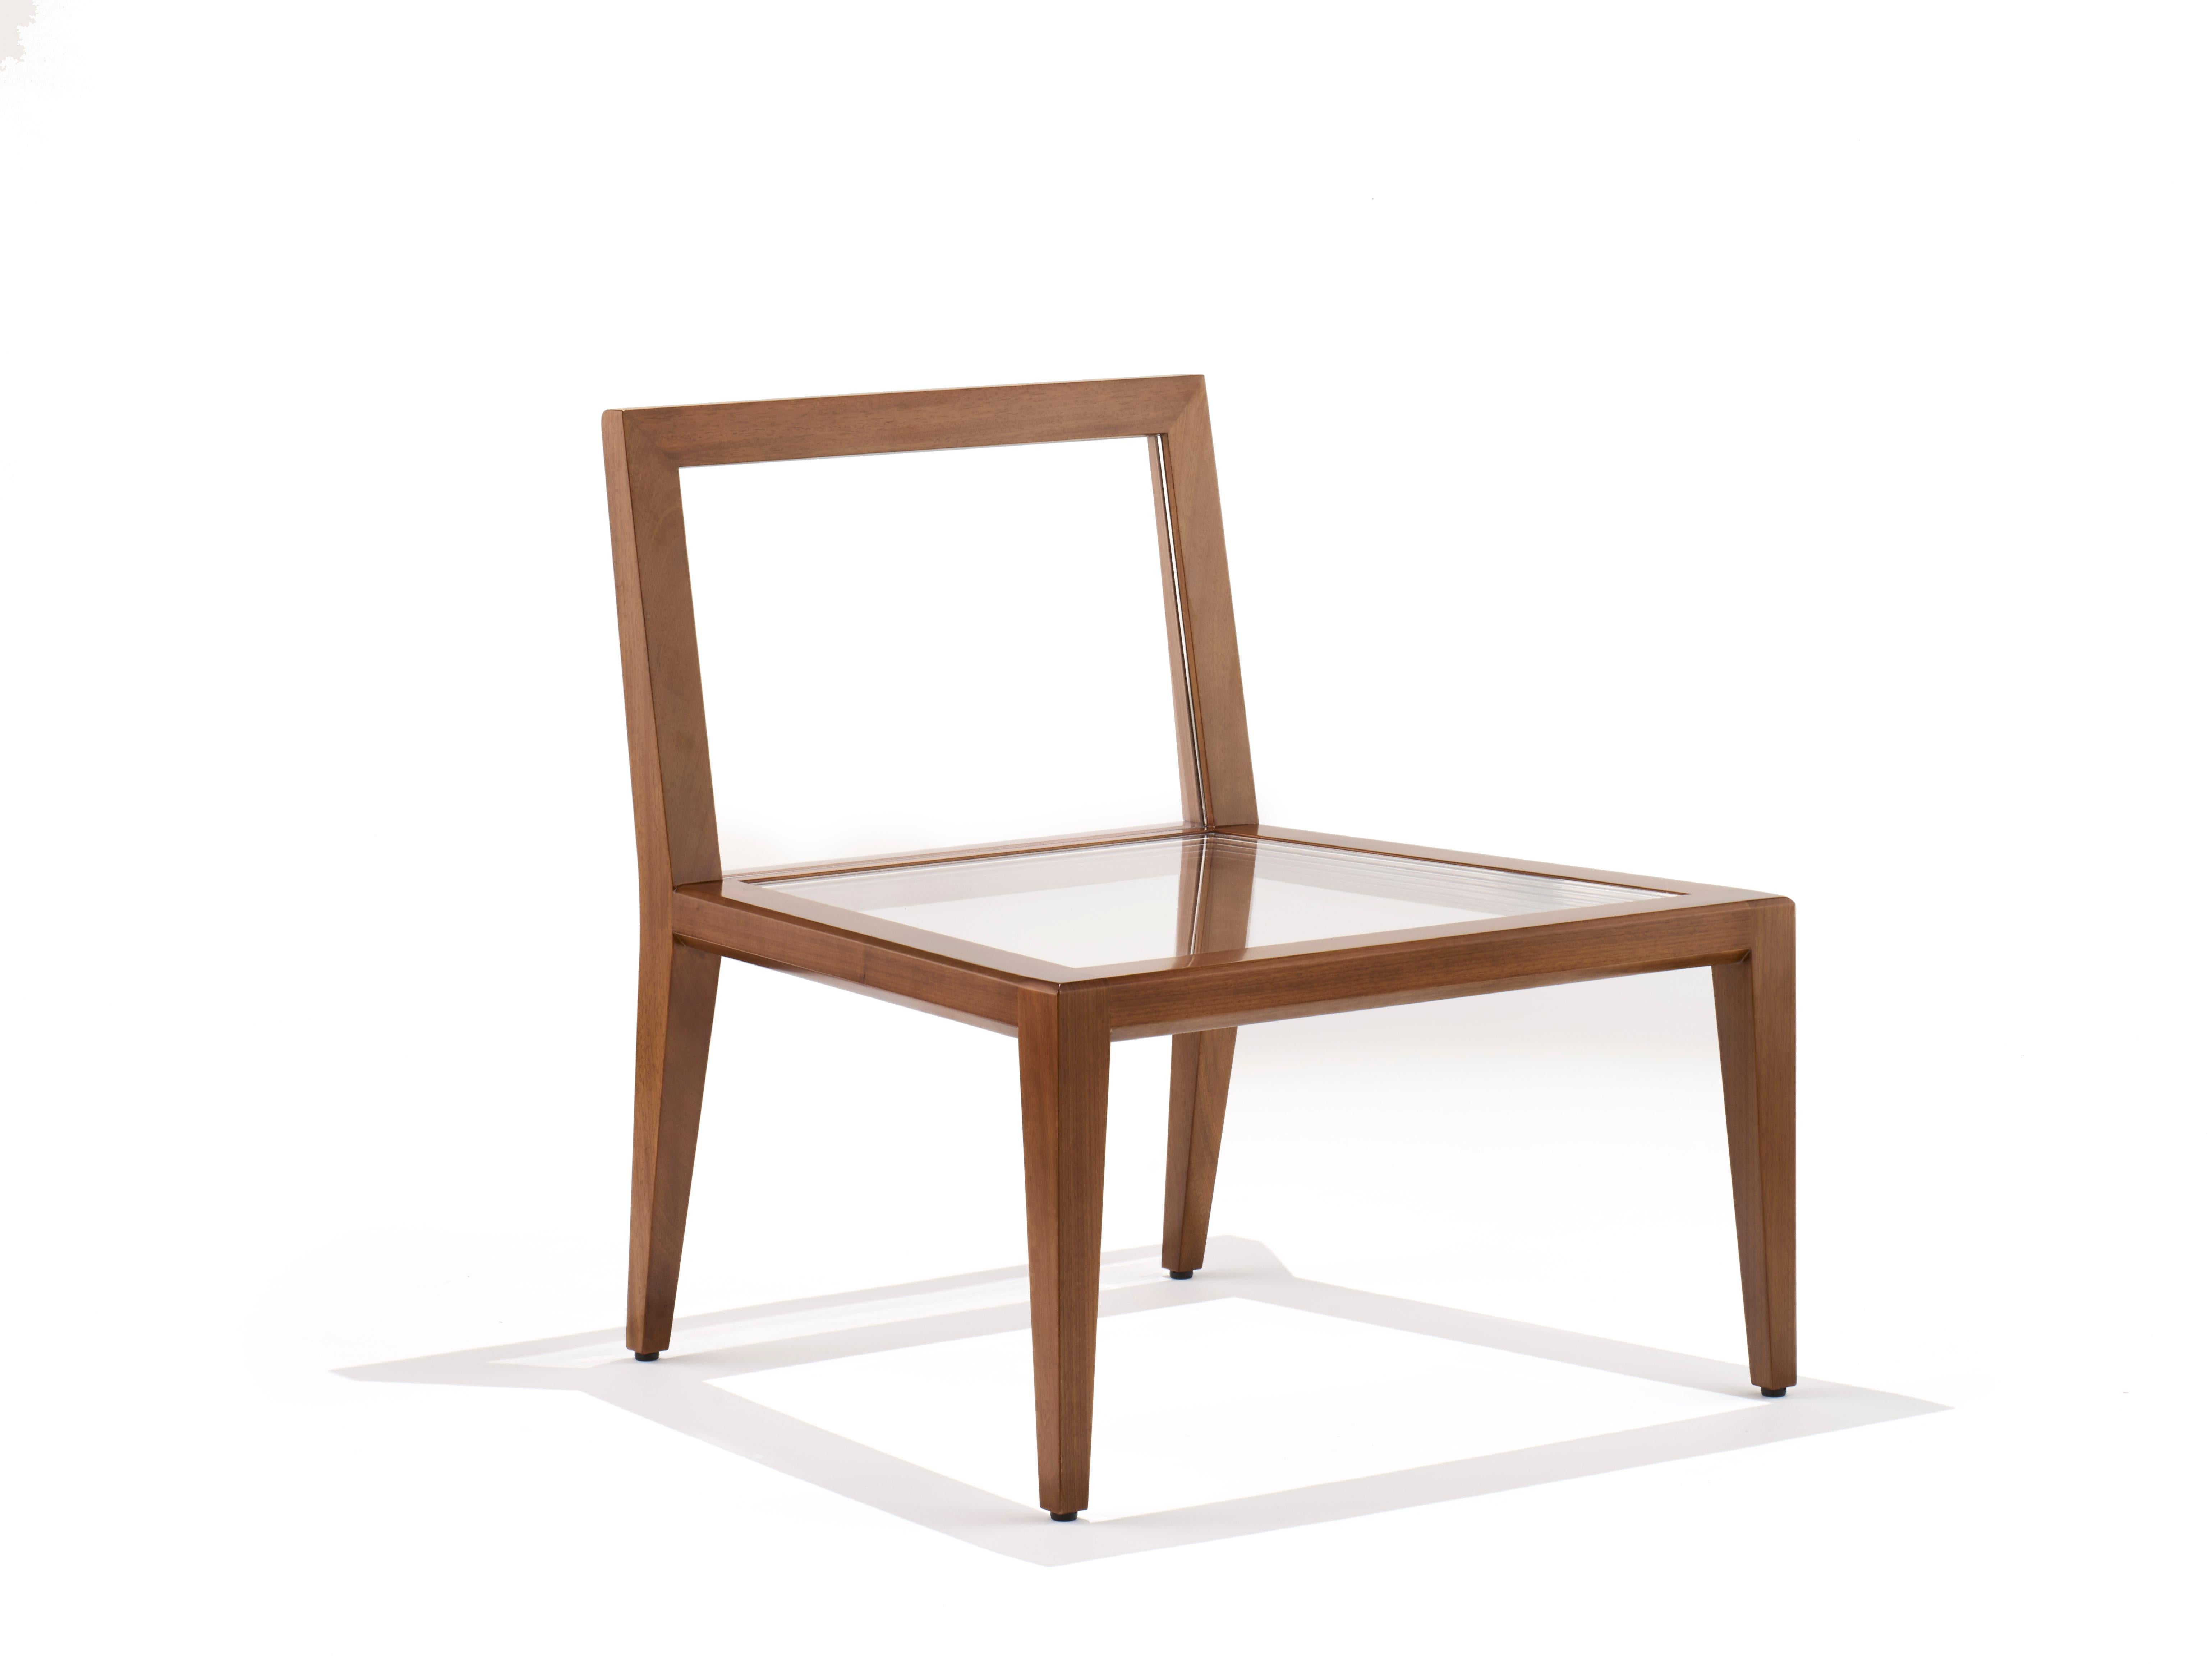 La chaise flottante en bois brouille les frontières entre l'art et le mobilier et encourage un dialogue interne avec le spectateur. Est-ce de l'art ou puis-je m'asseoir dessus ? Les deux. Fabriqué à la main en noyer massif, le cadre est élégamment